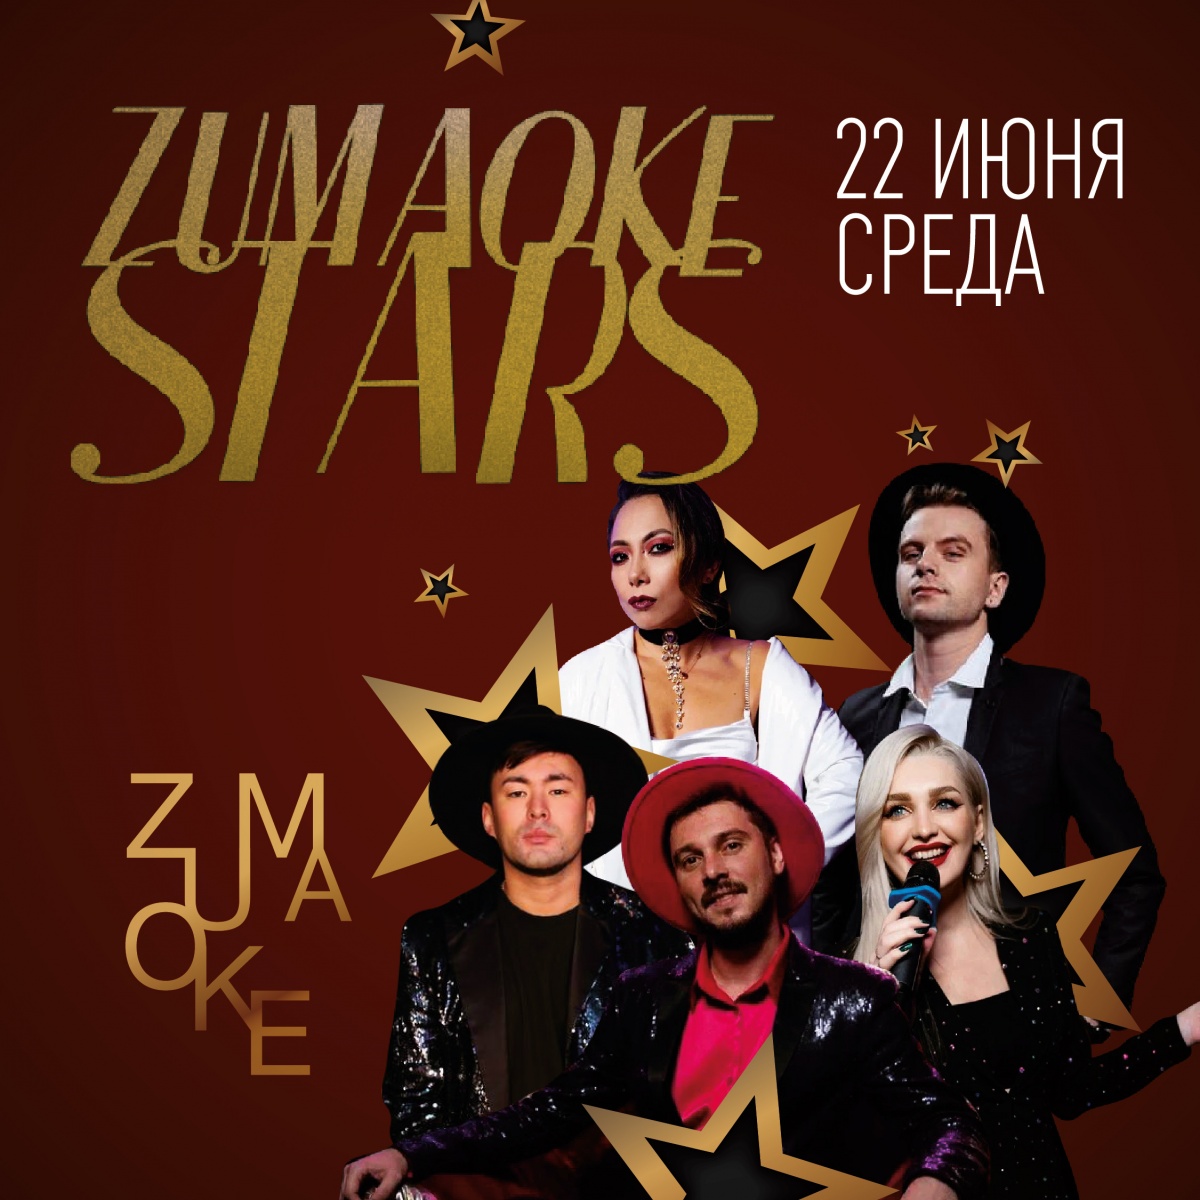 Концерт ZUMAOKE STARS 22.06